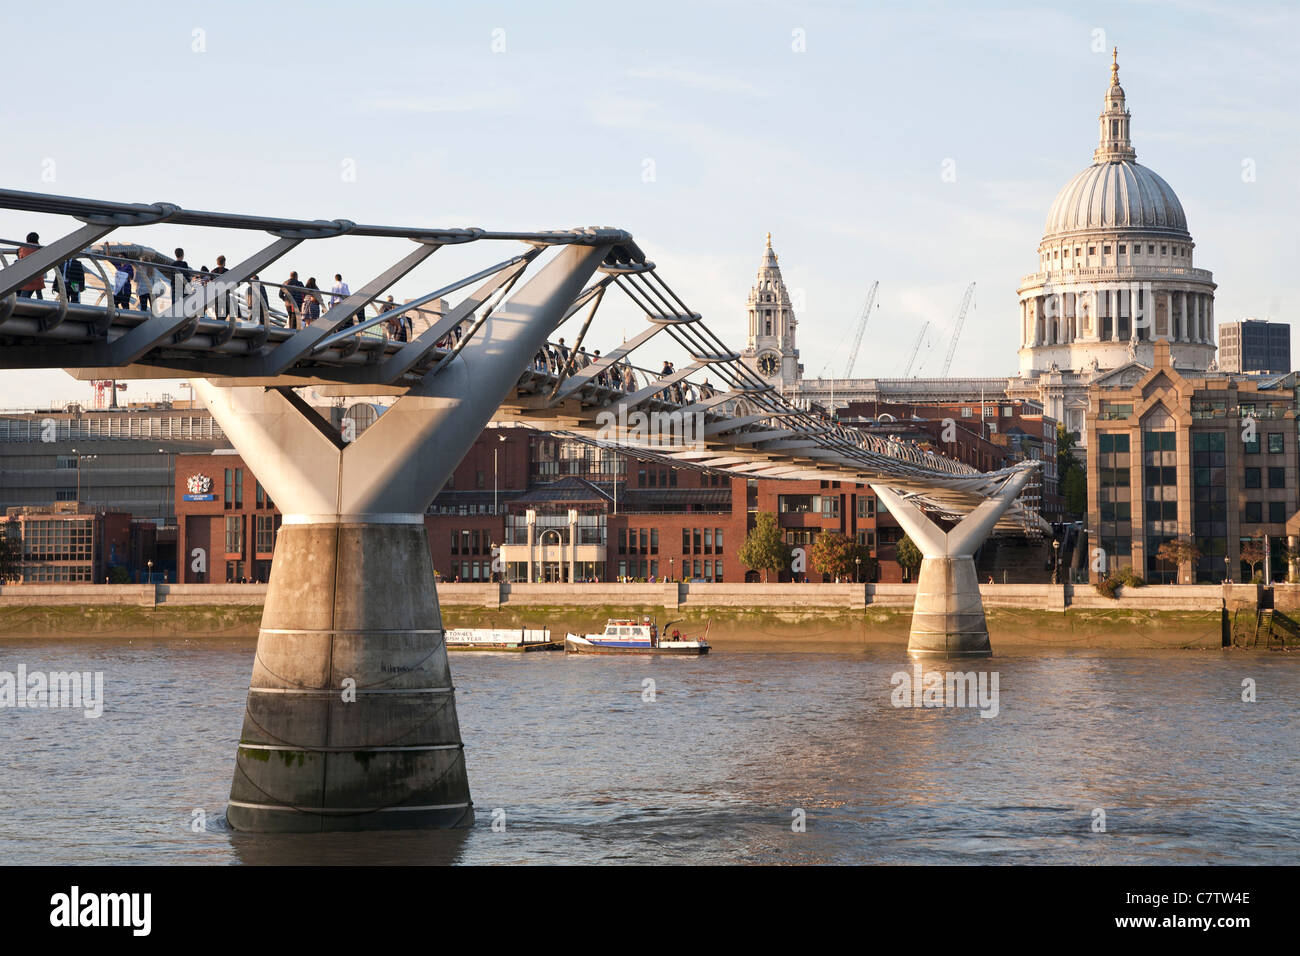 Pont pied du millénaire, London Millennium Footbridge et la Cathédrale St Paul de Londres. Banque D'Images